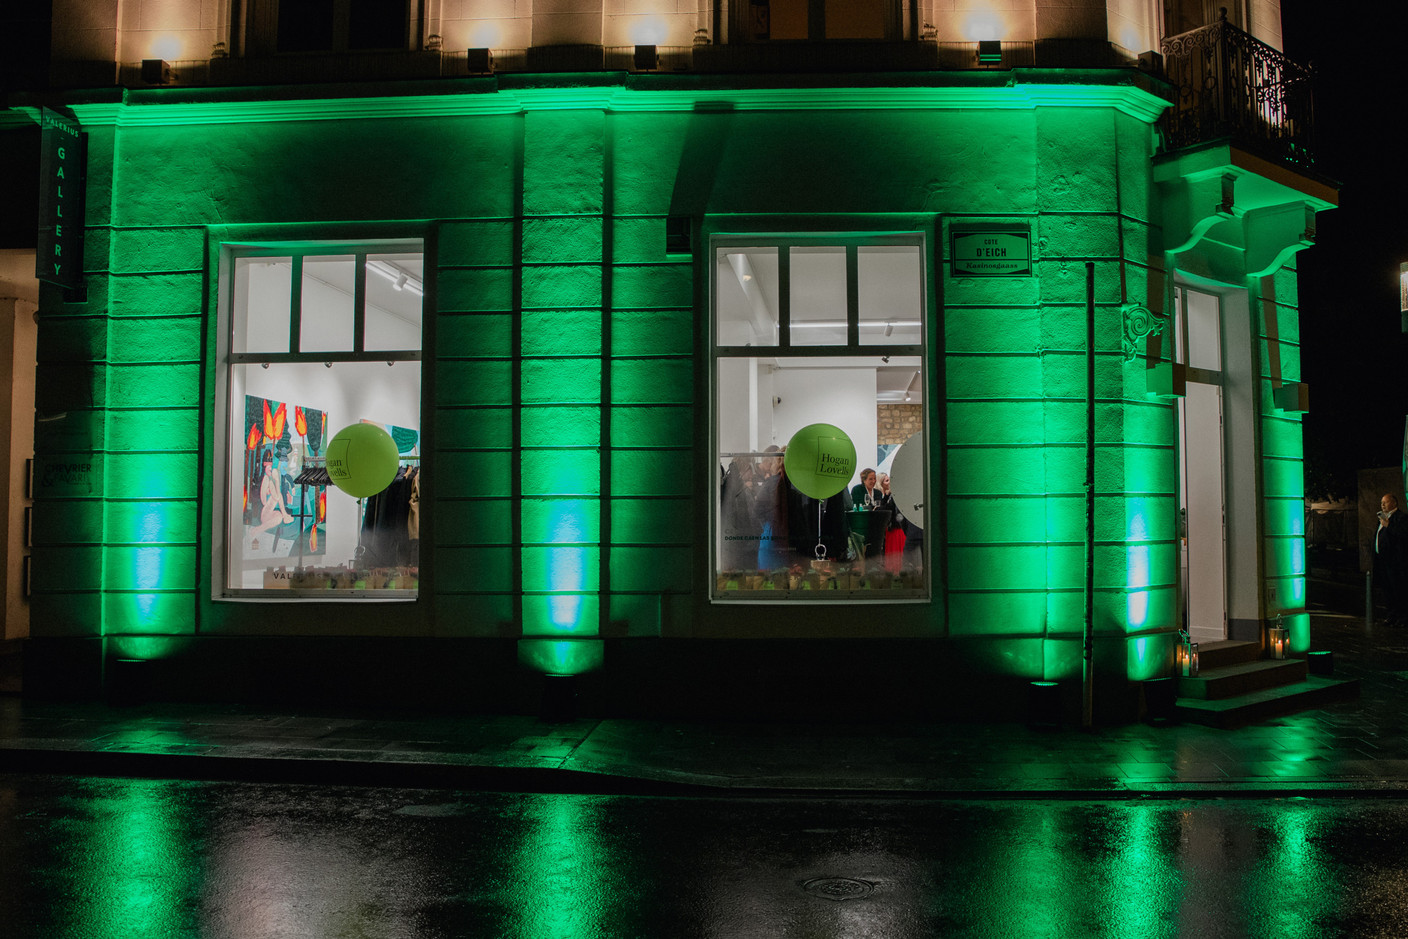 The Place du Théâtre, coloured green for the occasion. Photo: Aurélie Savart